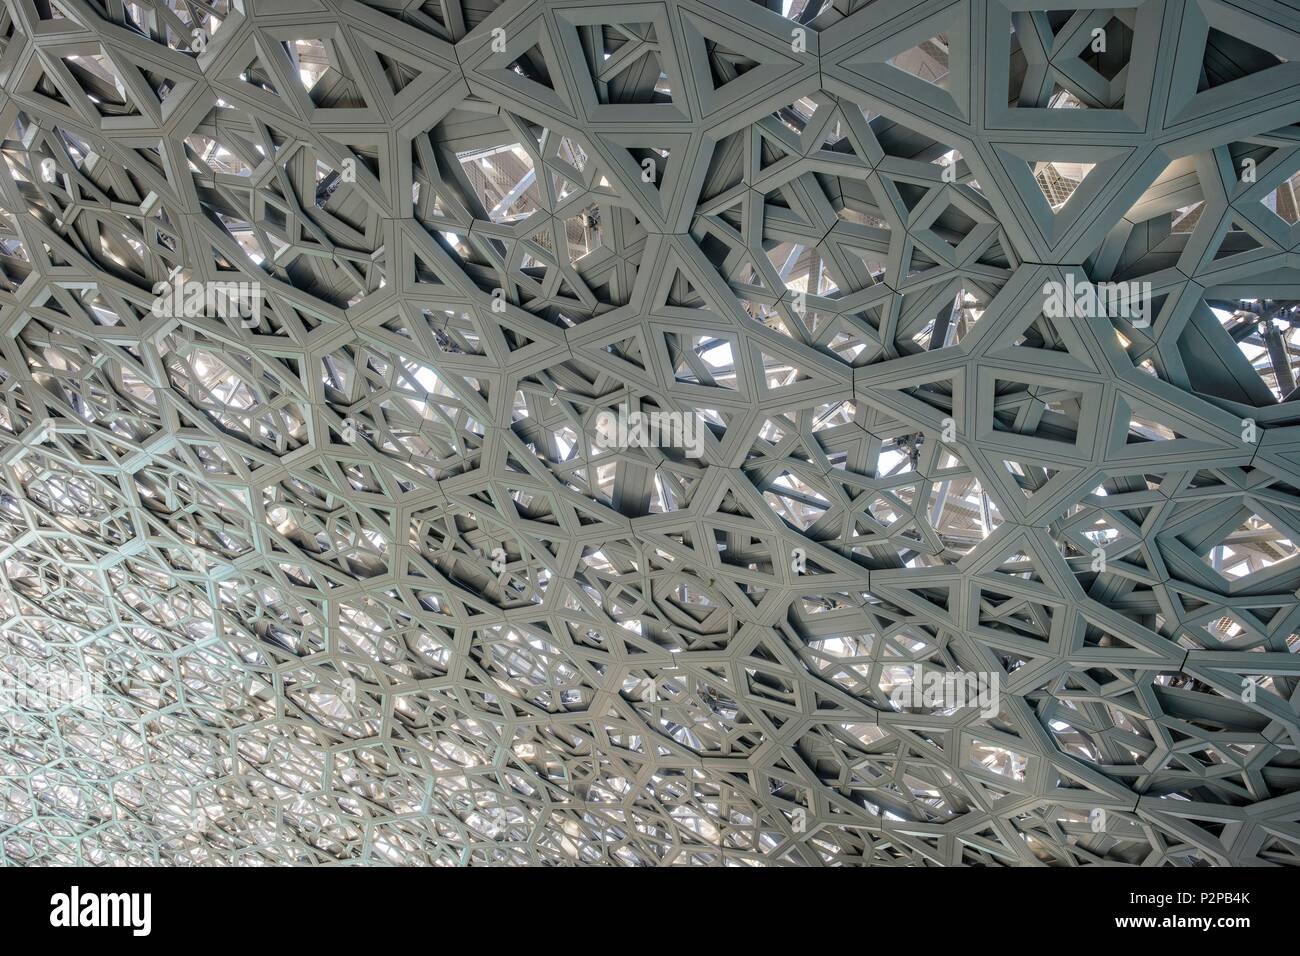 Emirats arabes unis, Abu Dhabi, l'île de Saadiyat, le Louvre Abu Dhabi est le premier musée universel dans le monde arabe, conçu et construit par l'architecte français Jean Nouvel Banque D'Images